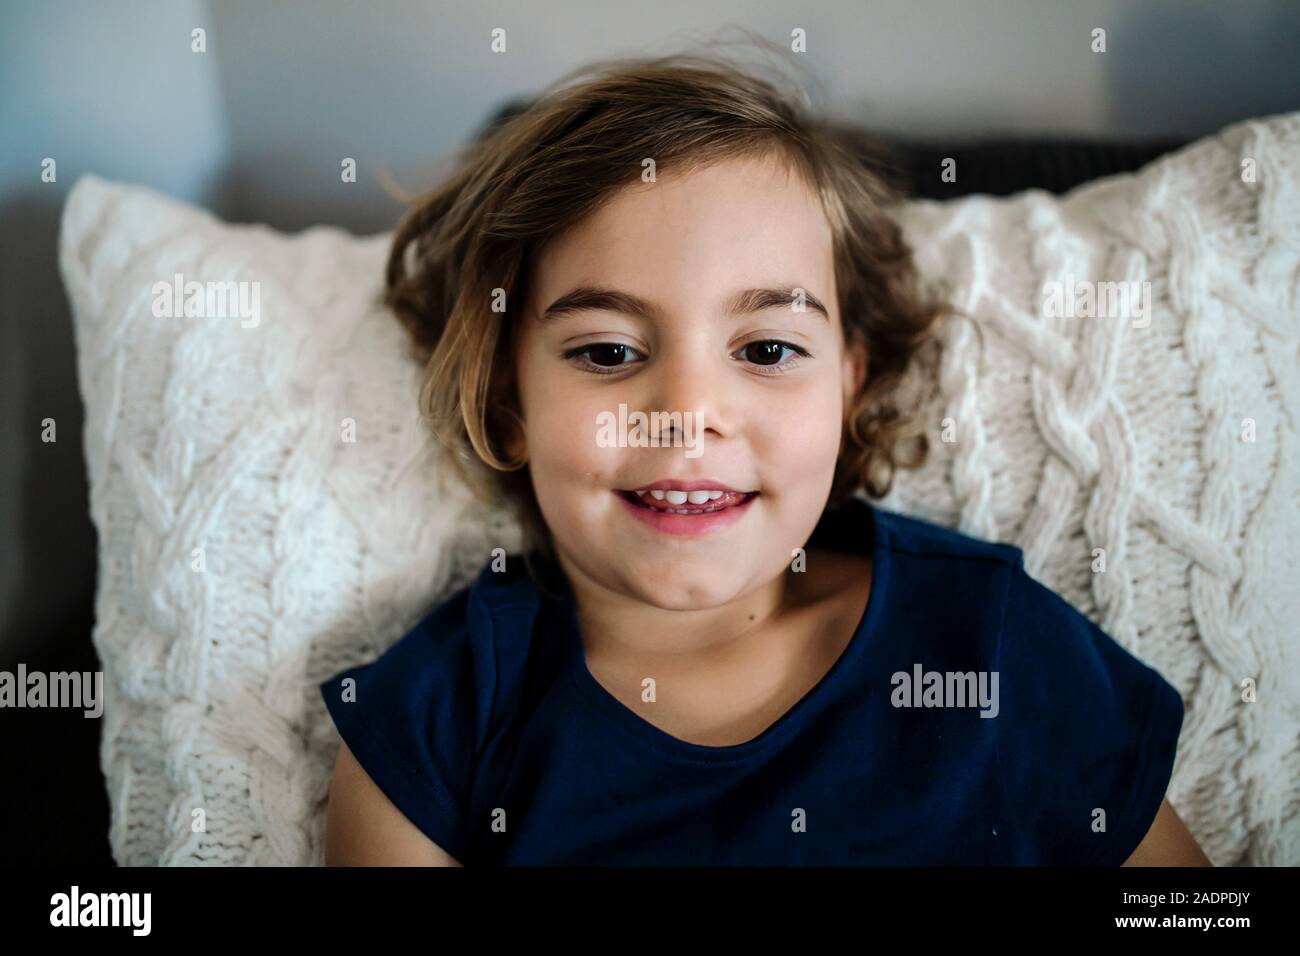 Bella sorridente bambina di 4 anni ragazza con sopracciglia scure e occhi marroni Foto Stock